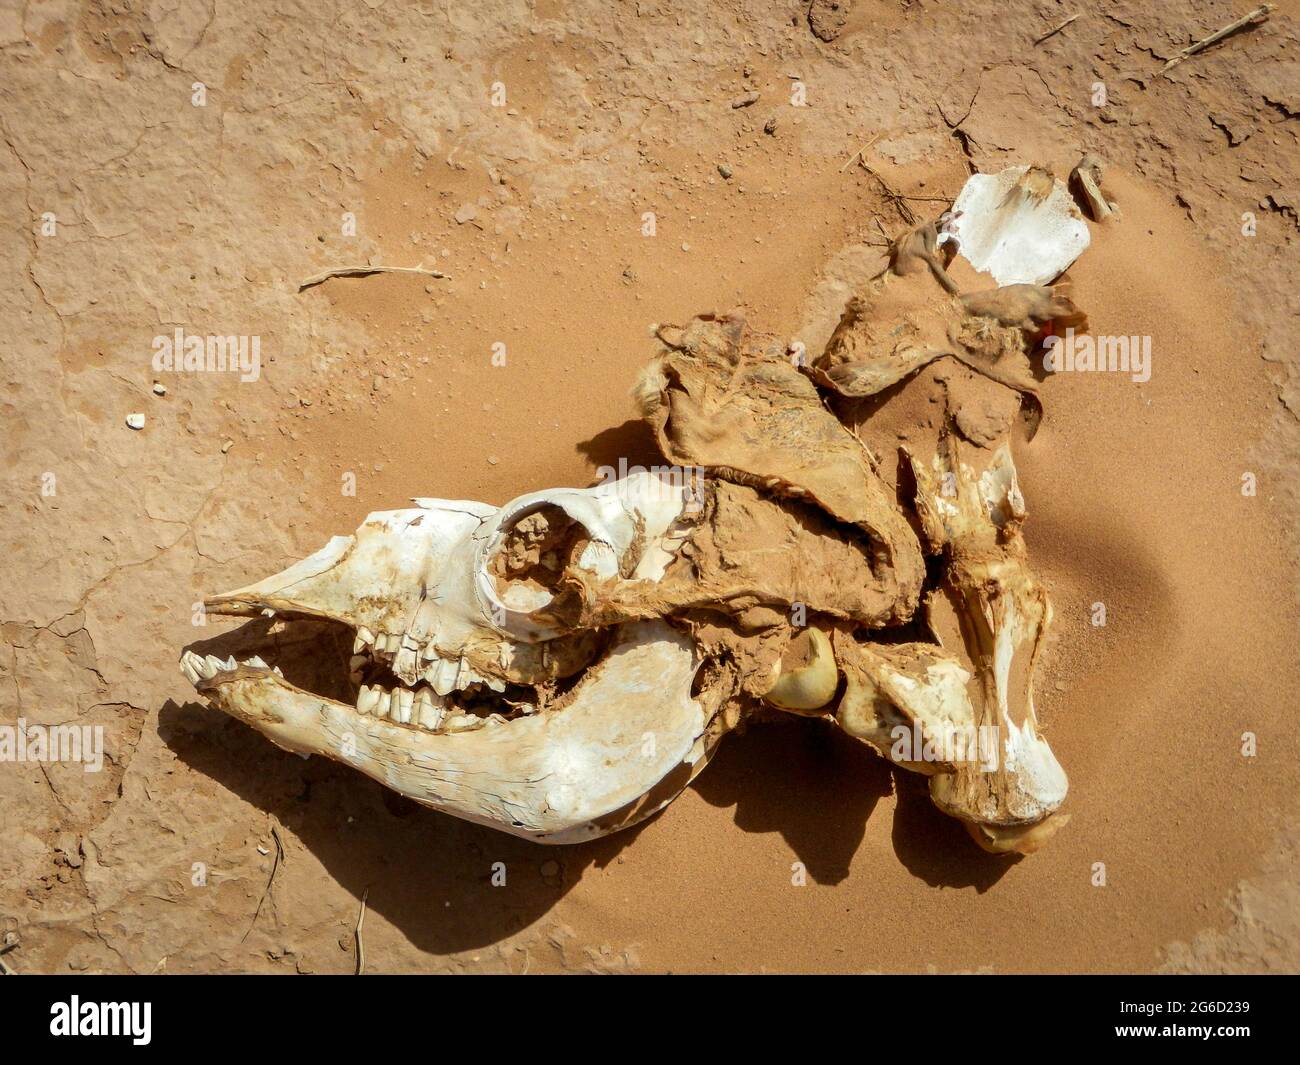 Skull of a camel in the dry sand of the Sahara desert Stock Photo